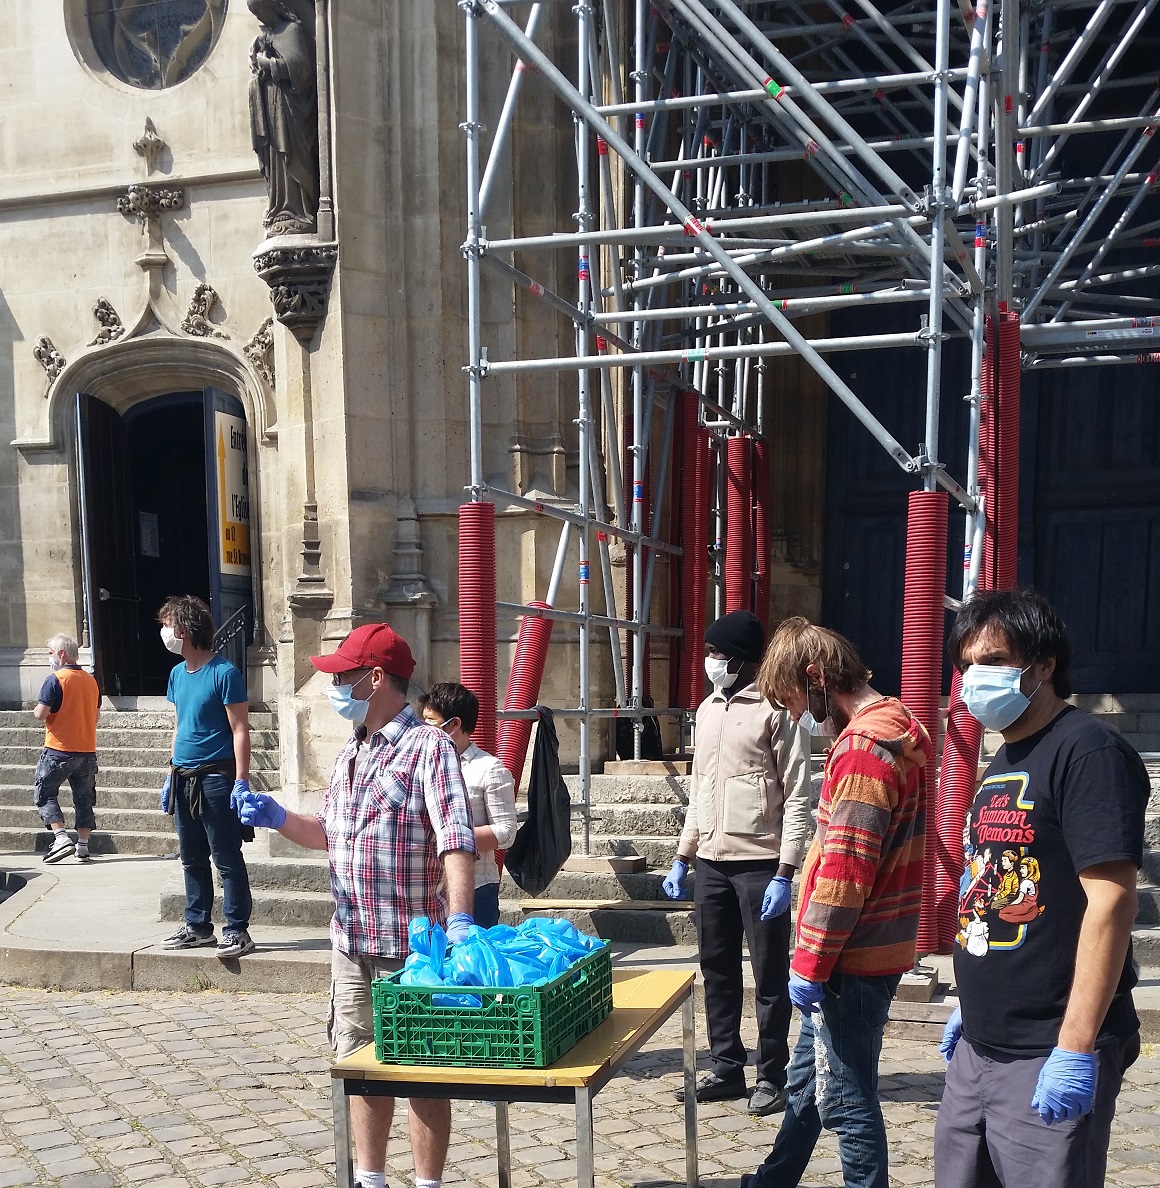 Des bénévoles préparent la distribution de repas et autres produits de première nécessité dans l’église Saint-Bernard, située dans le quartier populaire de la Goutte d’Or, à Paris (MEE/Hassina Mechaï)